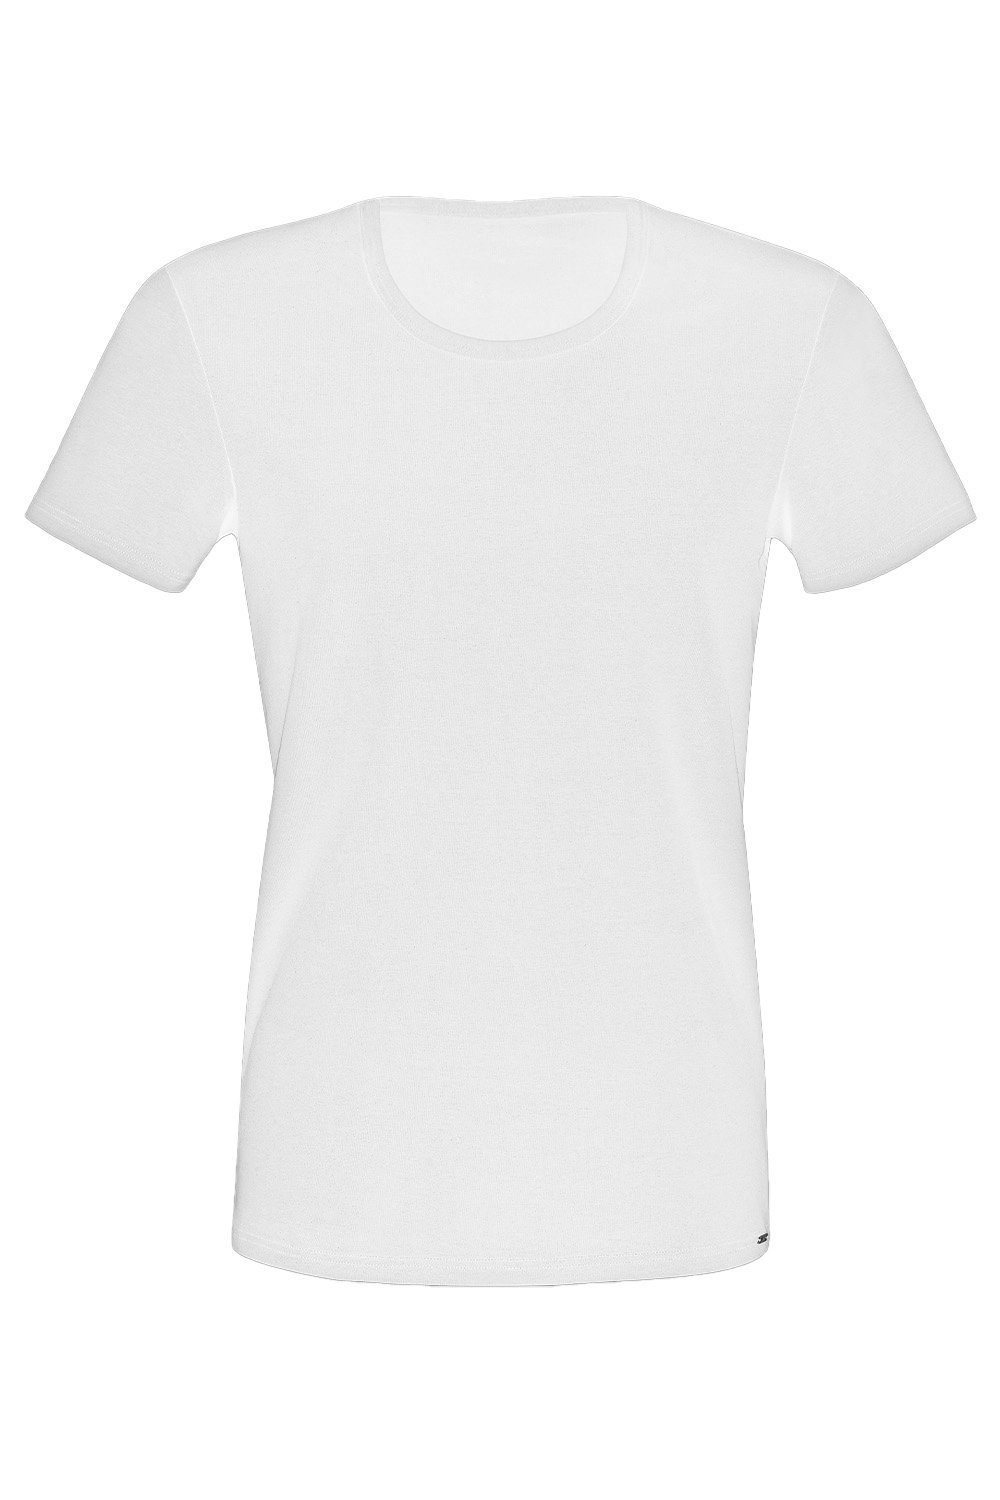 Lisca T-Shirt T-Shirt 31010 weiß